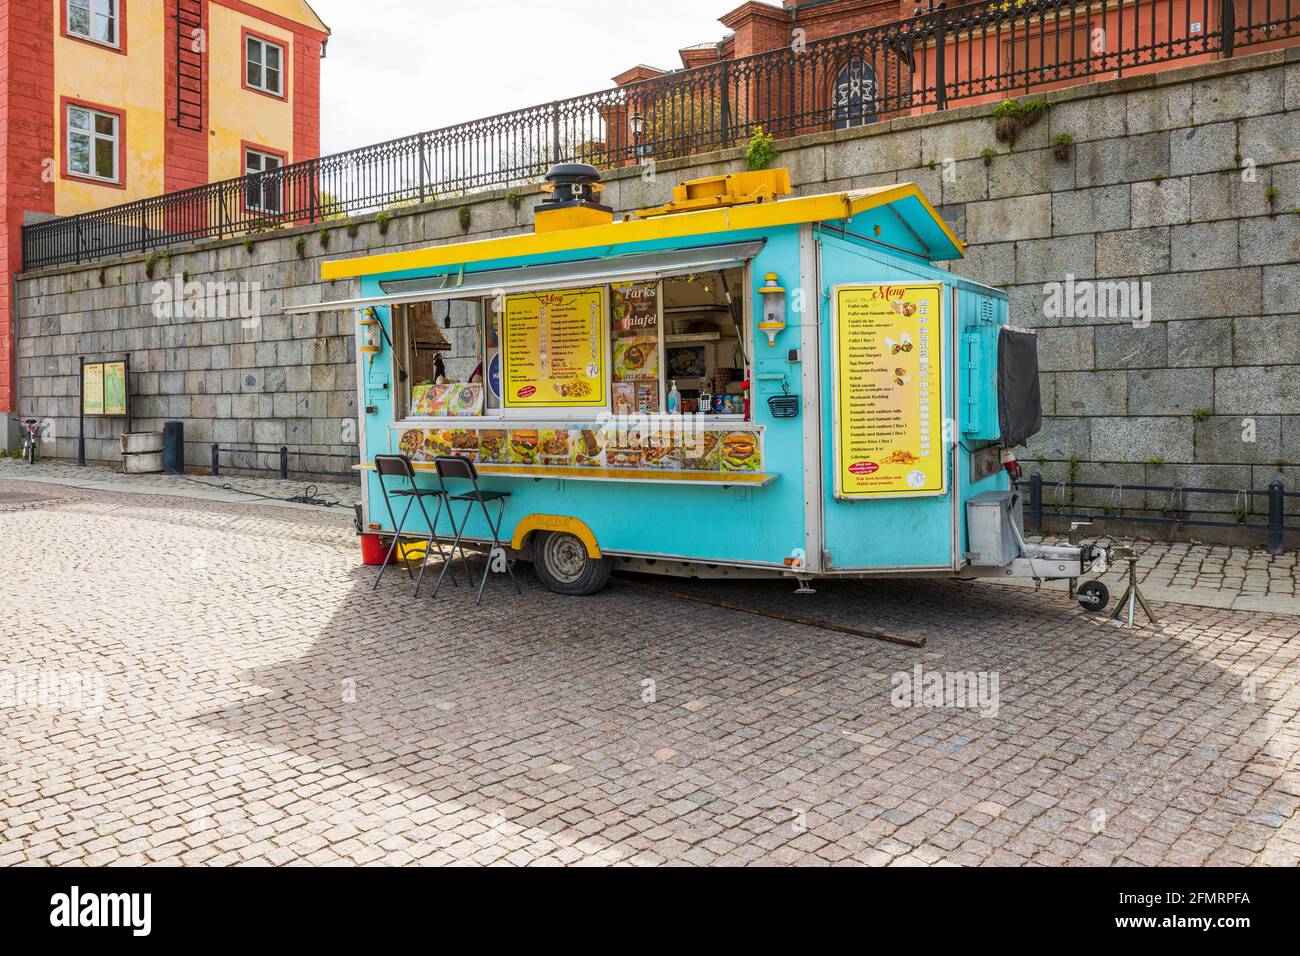 Vue magnifique sur le snack-bar extérieur coloré dans la rue d'Uppsala. Suède. Banque D'Images